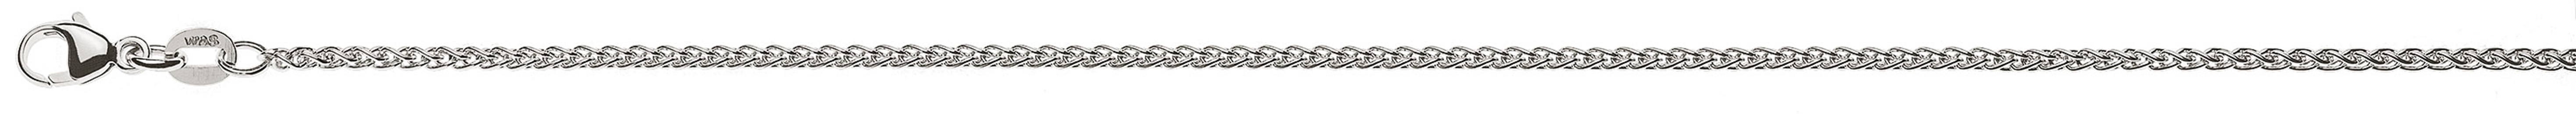 AURONOS Prestige Necklace white gold 18K cable chain 55cm 1.65mm